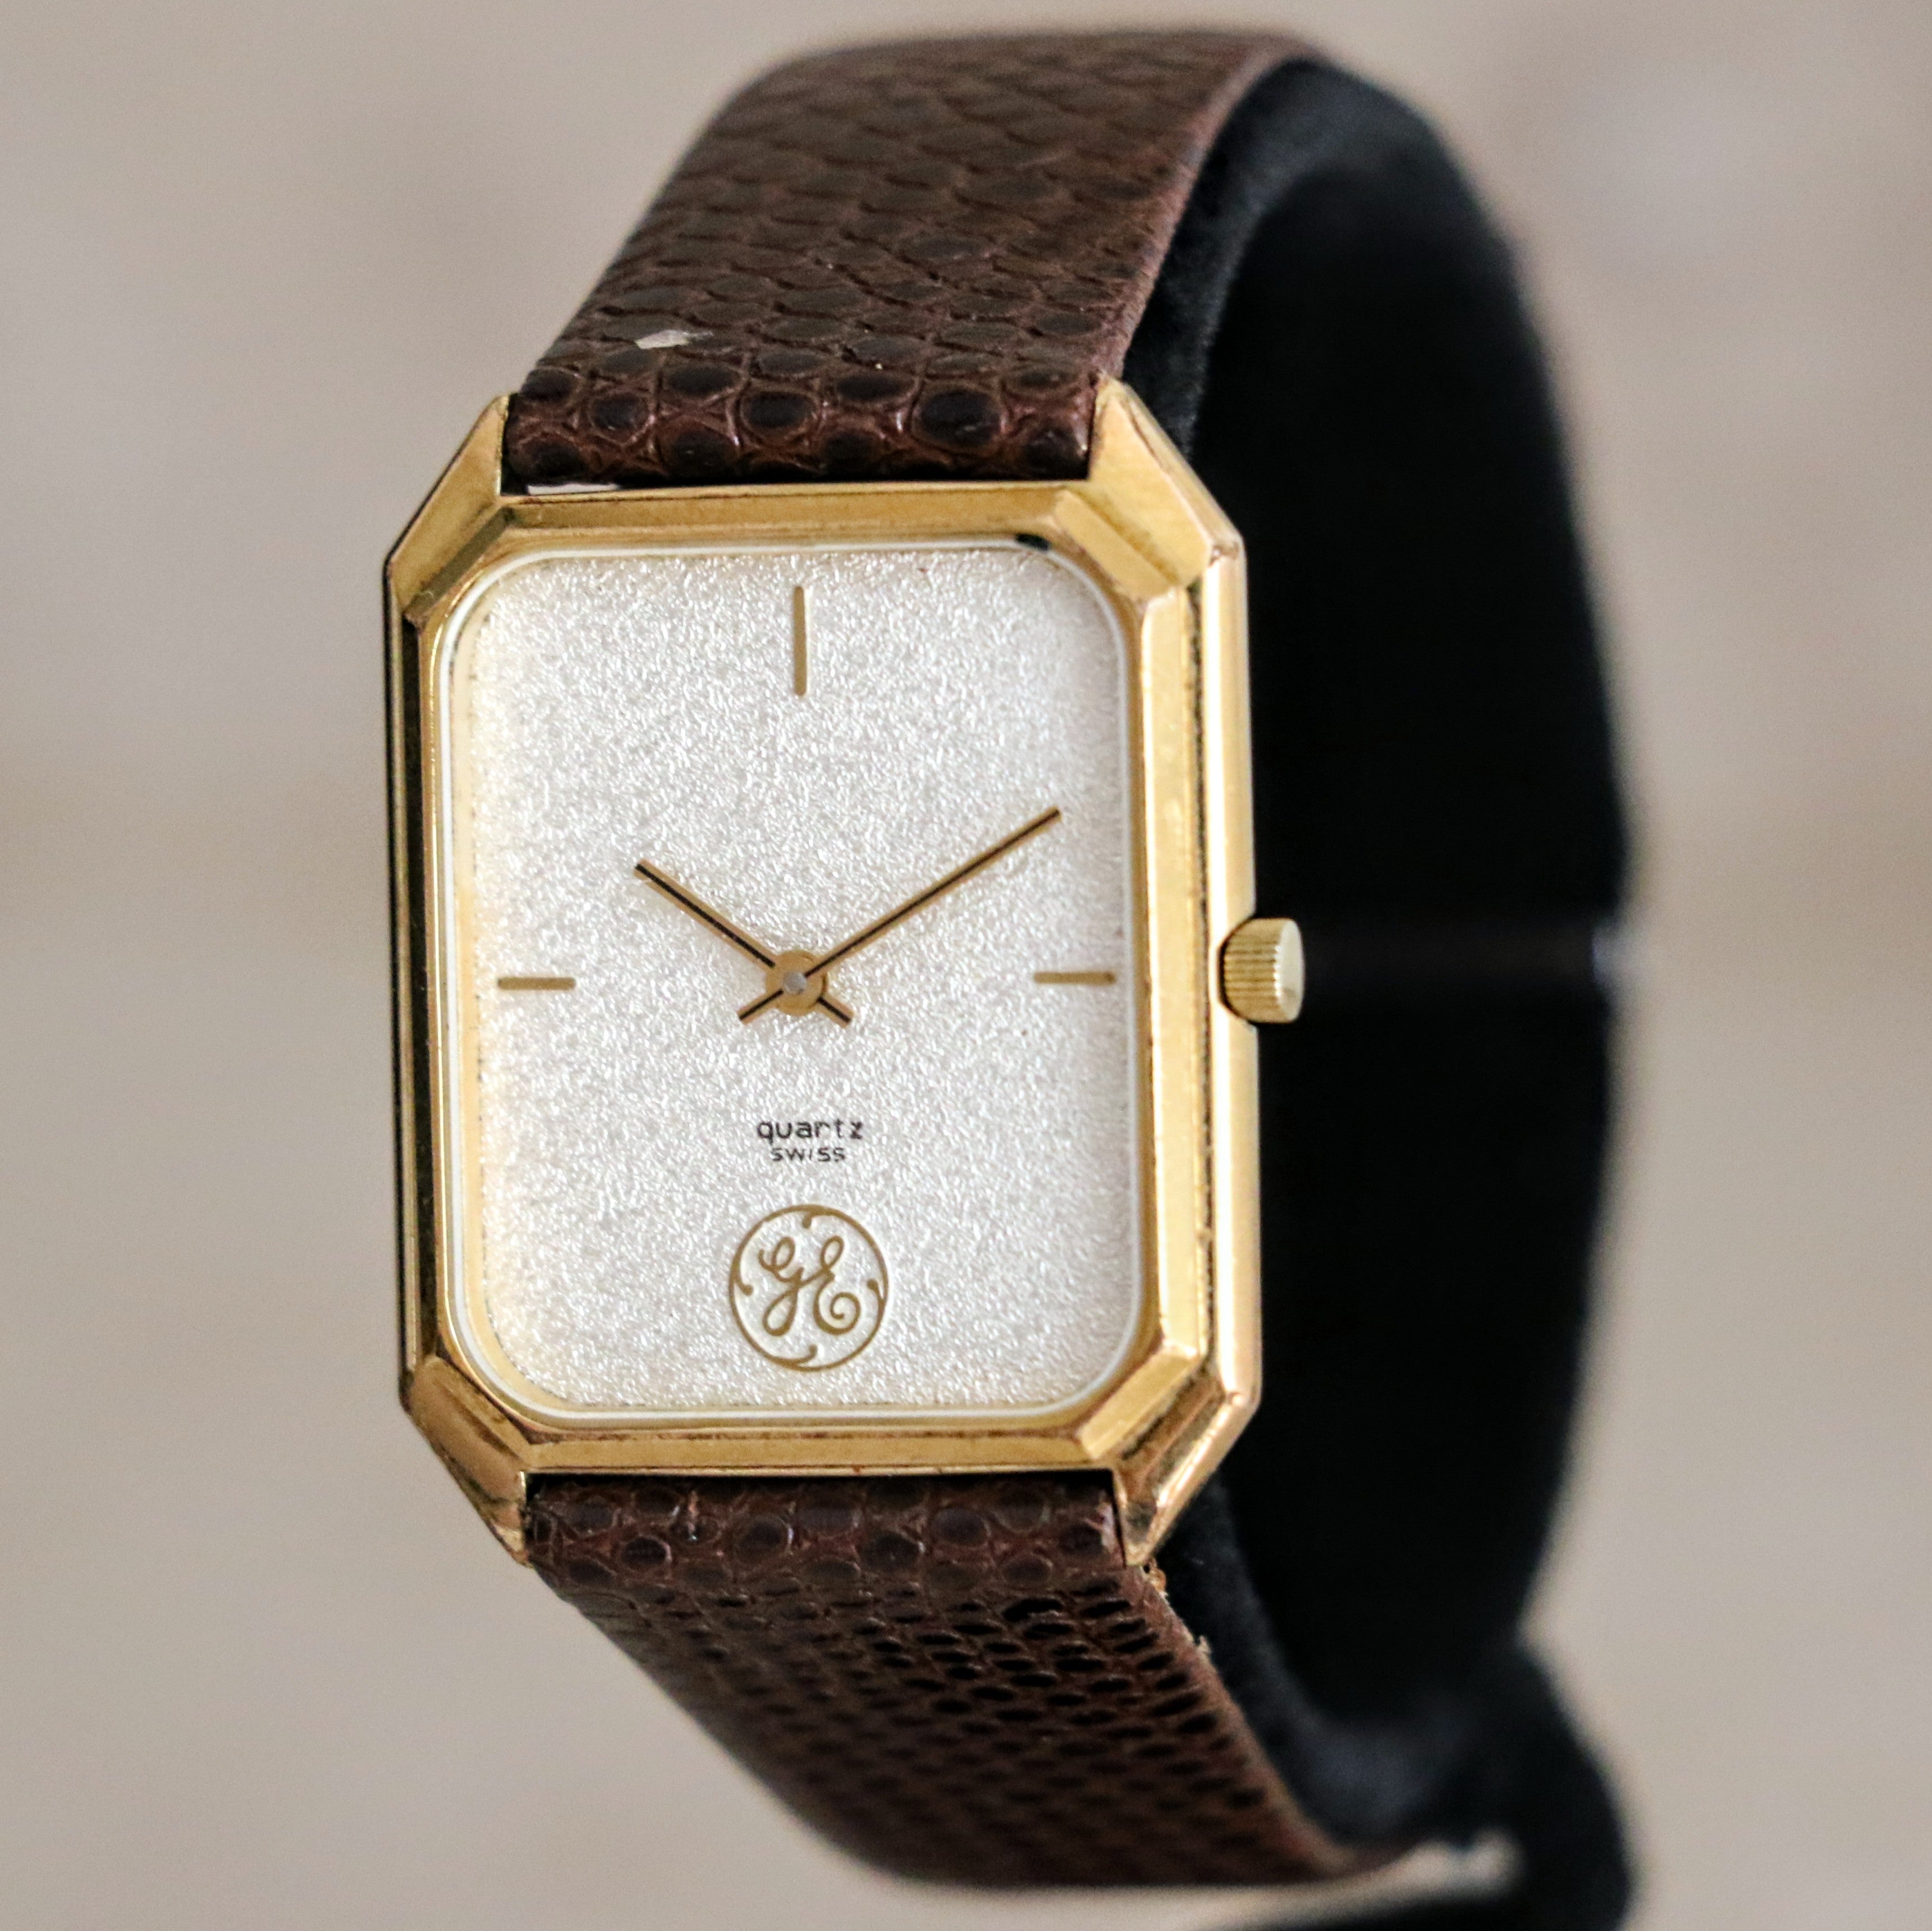 Private Label Watch GENERAL ELECTRIC Swiss Made Quartz Wristwatch ETA 256.031